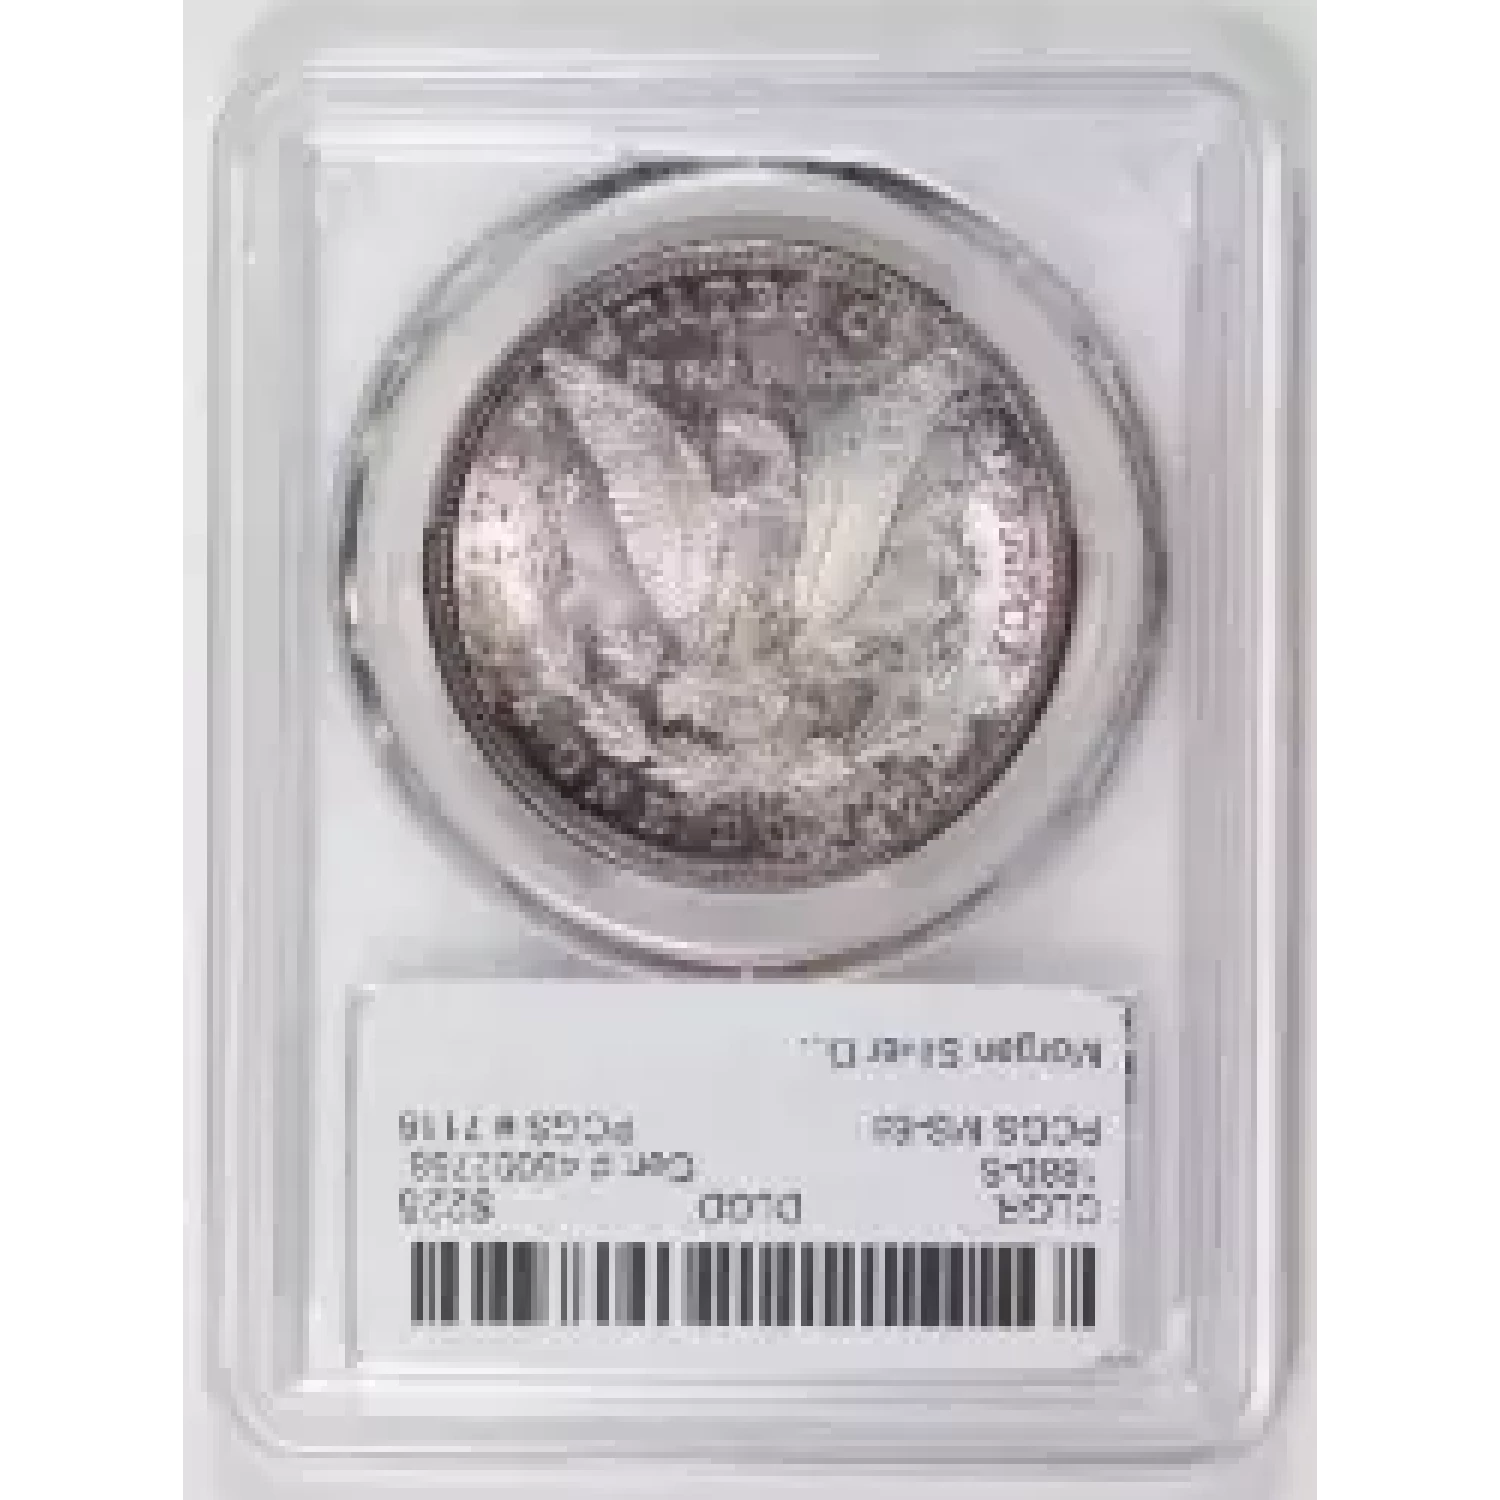 1880-S $1 (3)